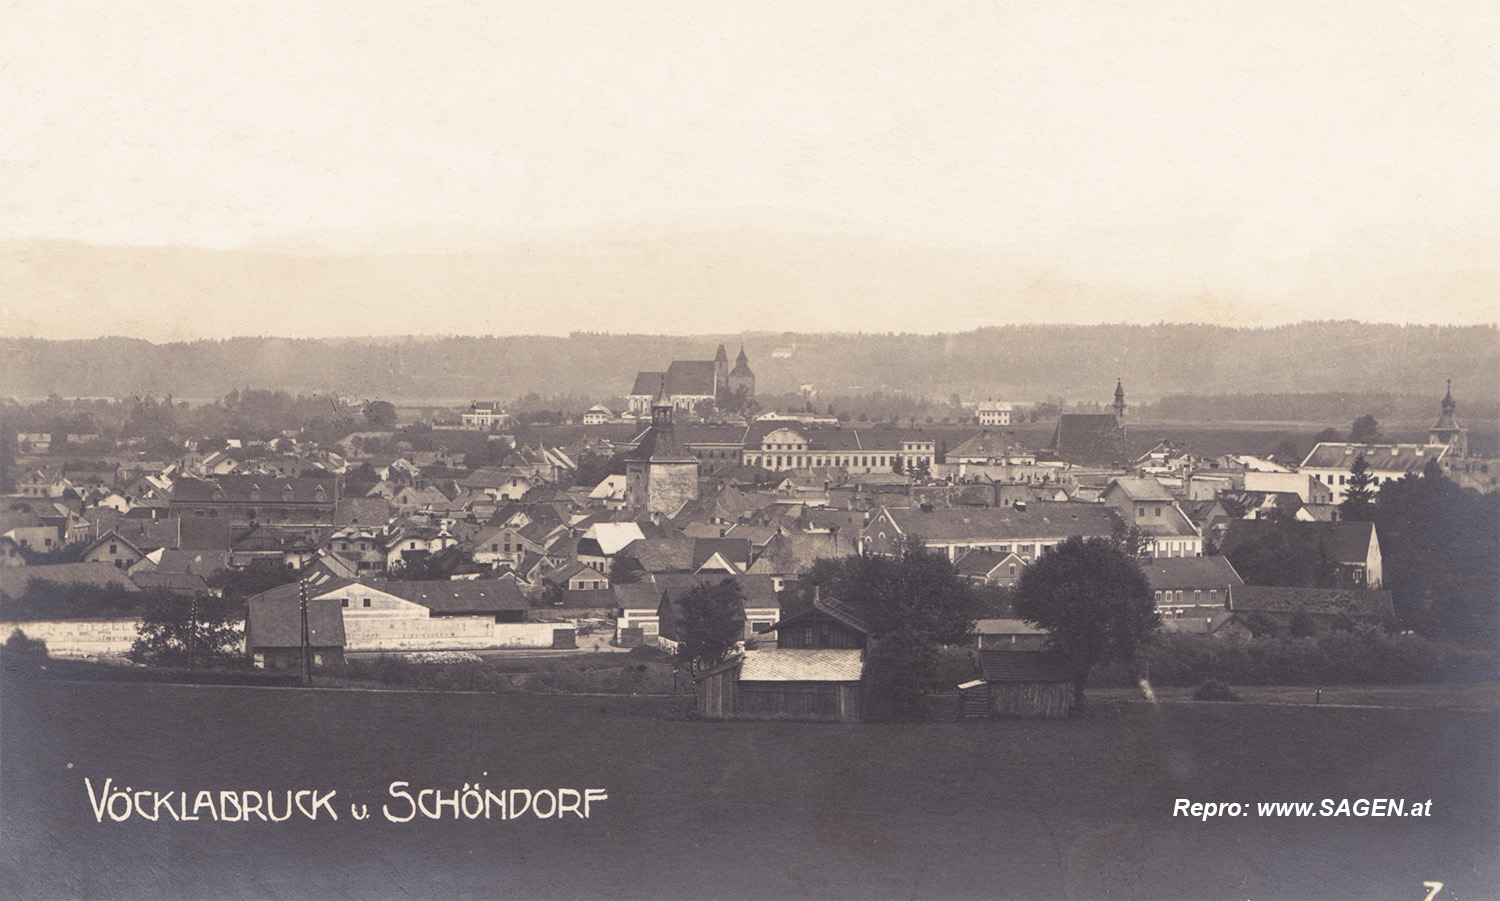 Vöcklabruck und Schöndorf